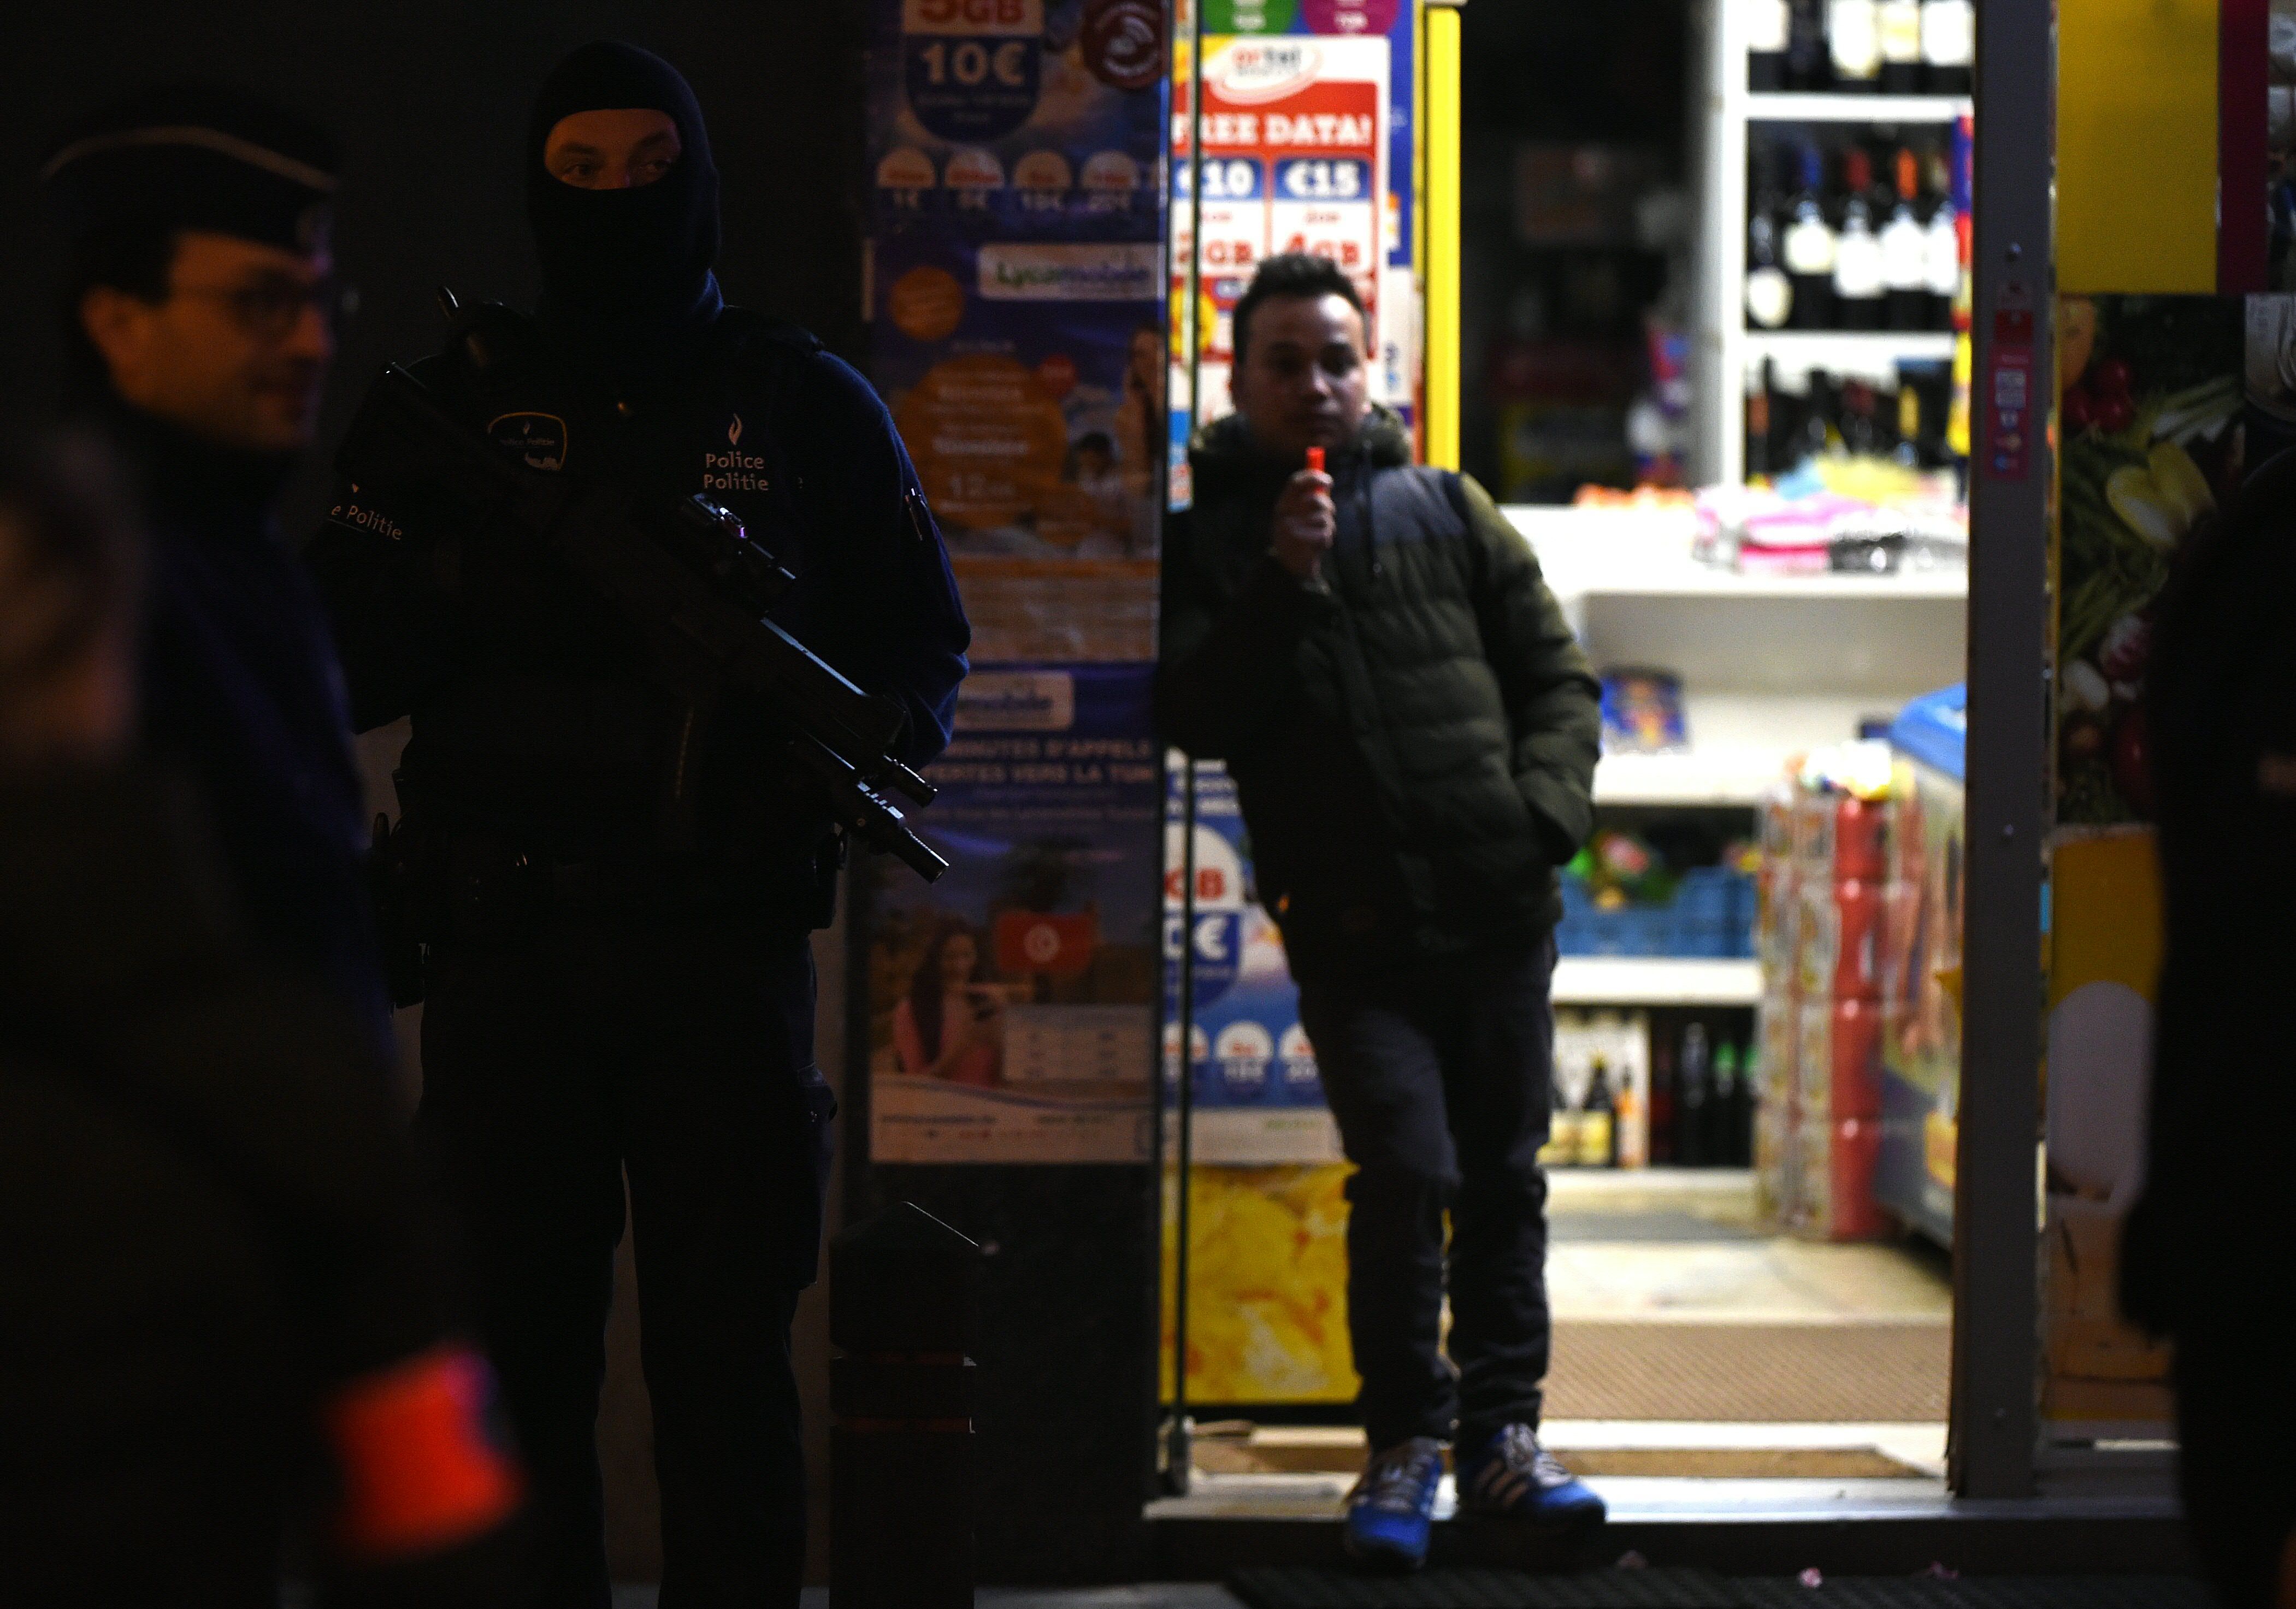 Belgium, France make arrests linked to attacks